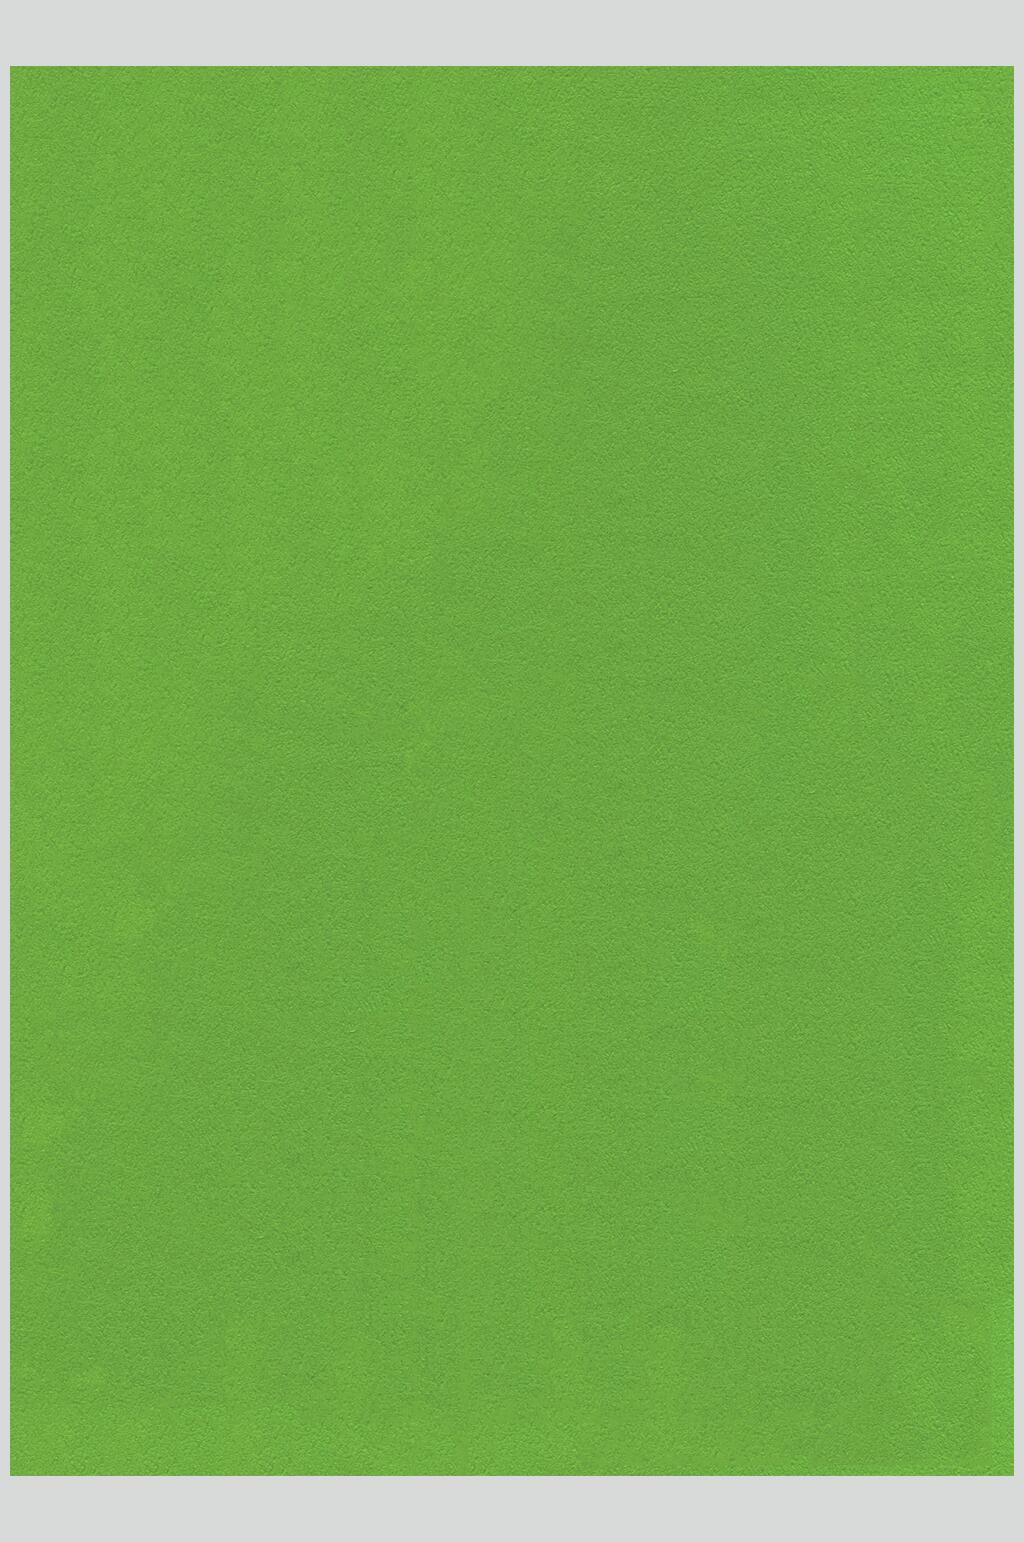 纯绿色背景图无字图片